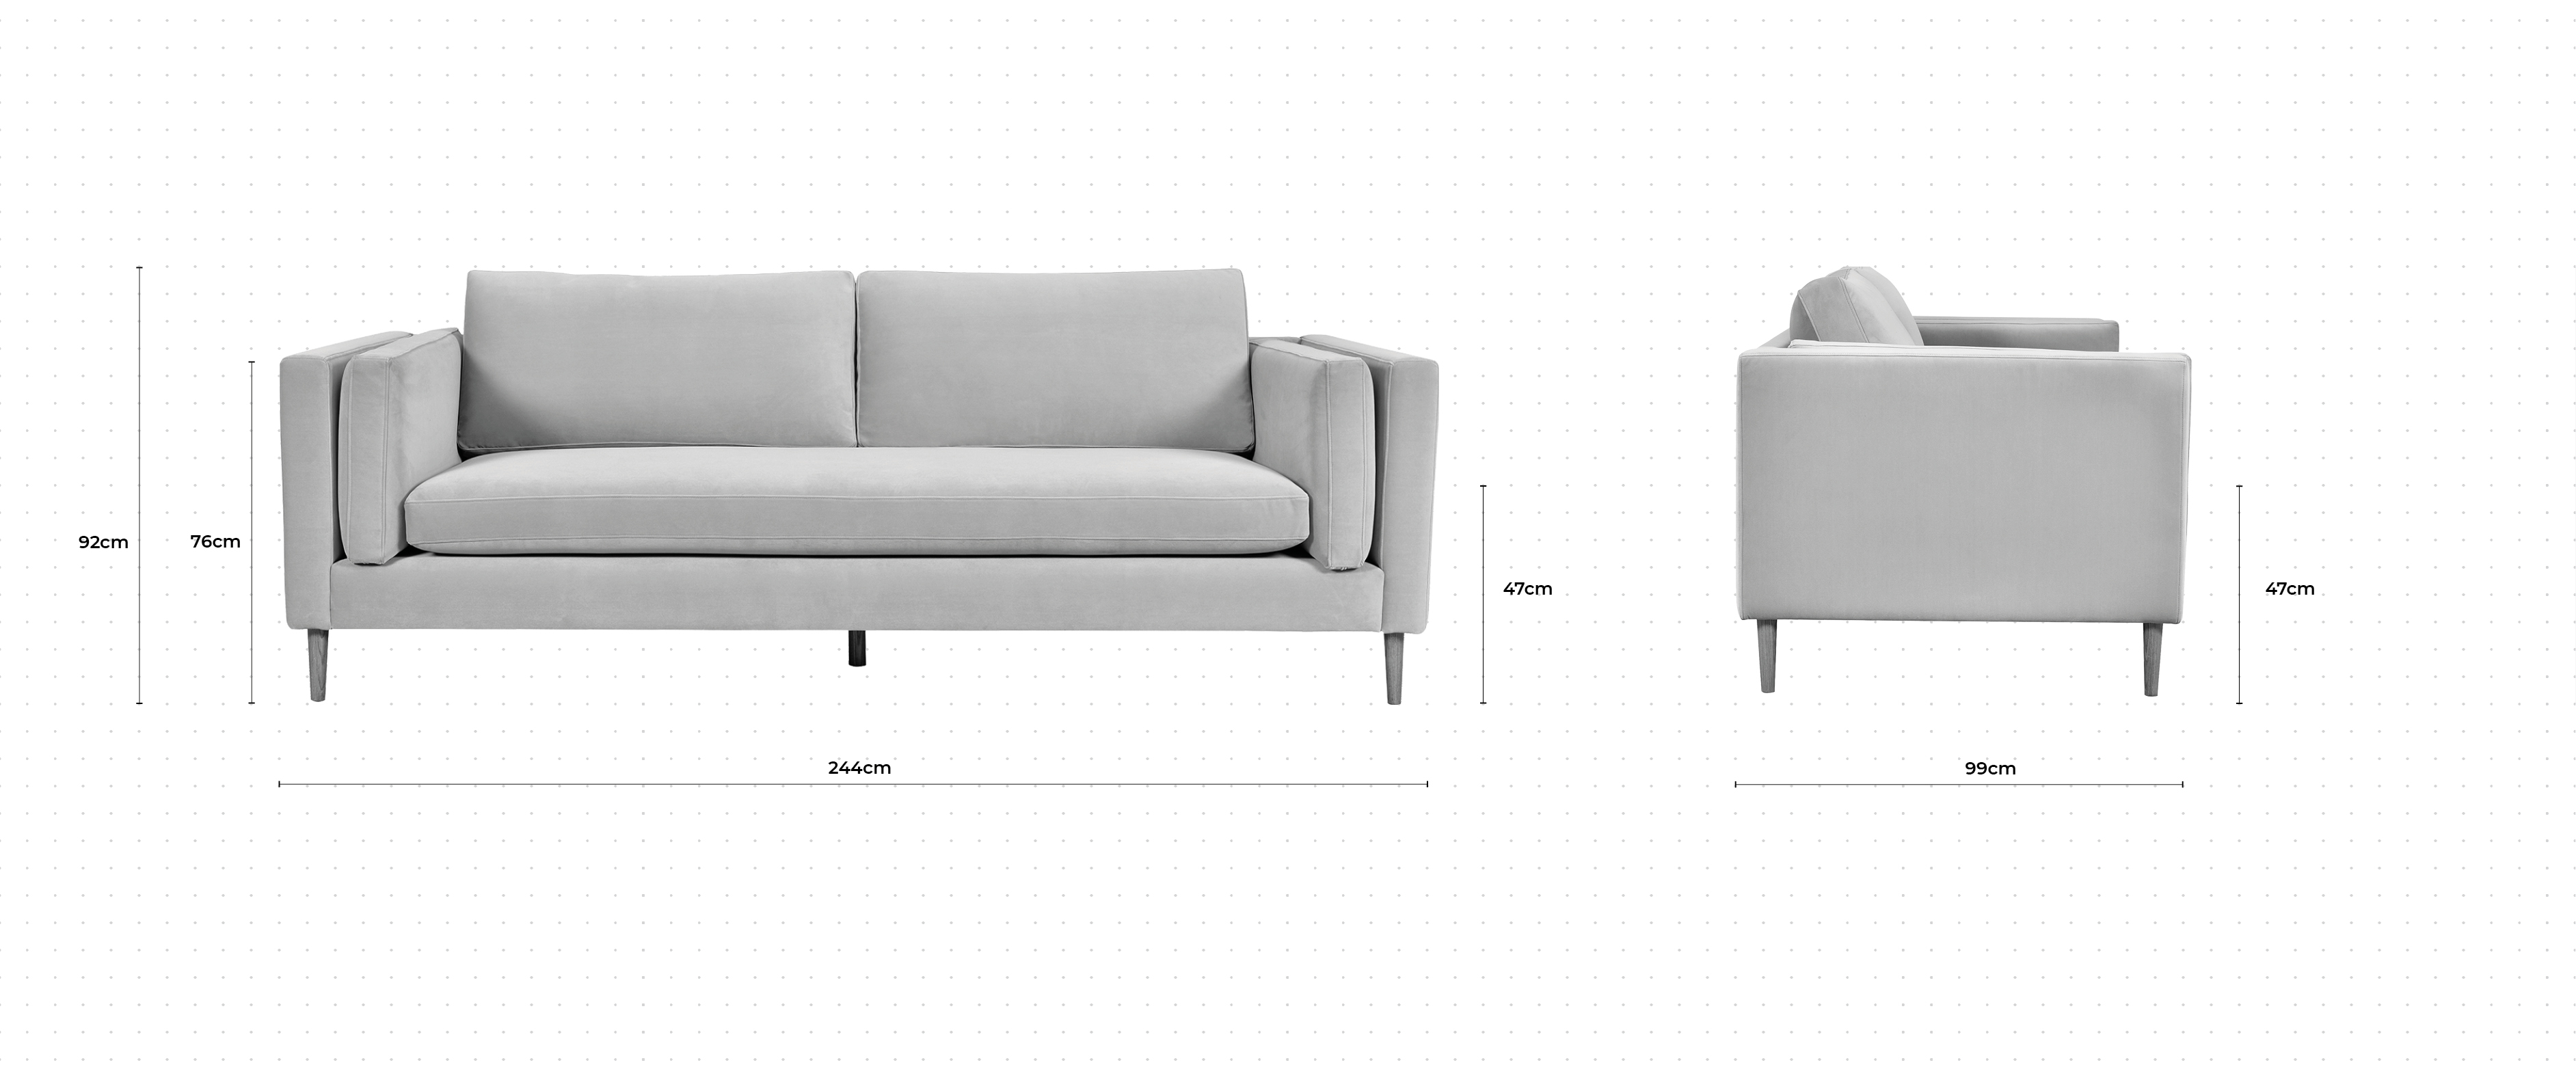 Eden 2 Seater Sofa dimensions